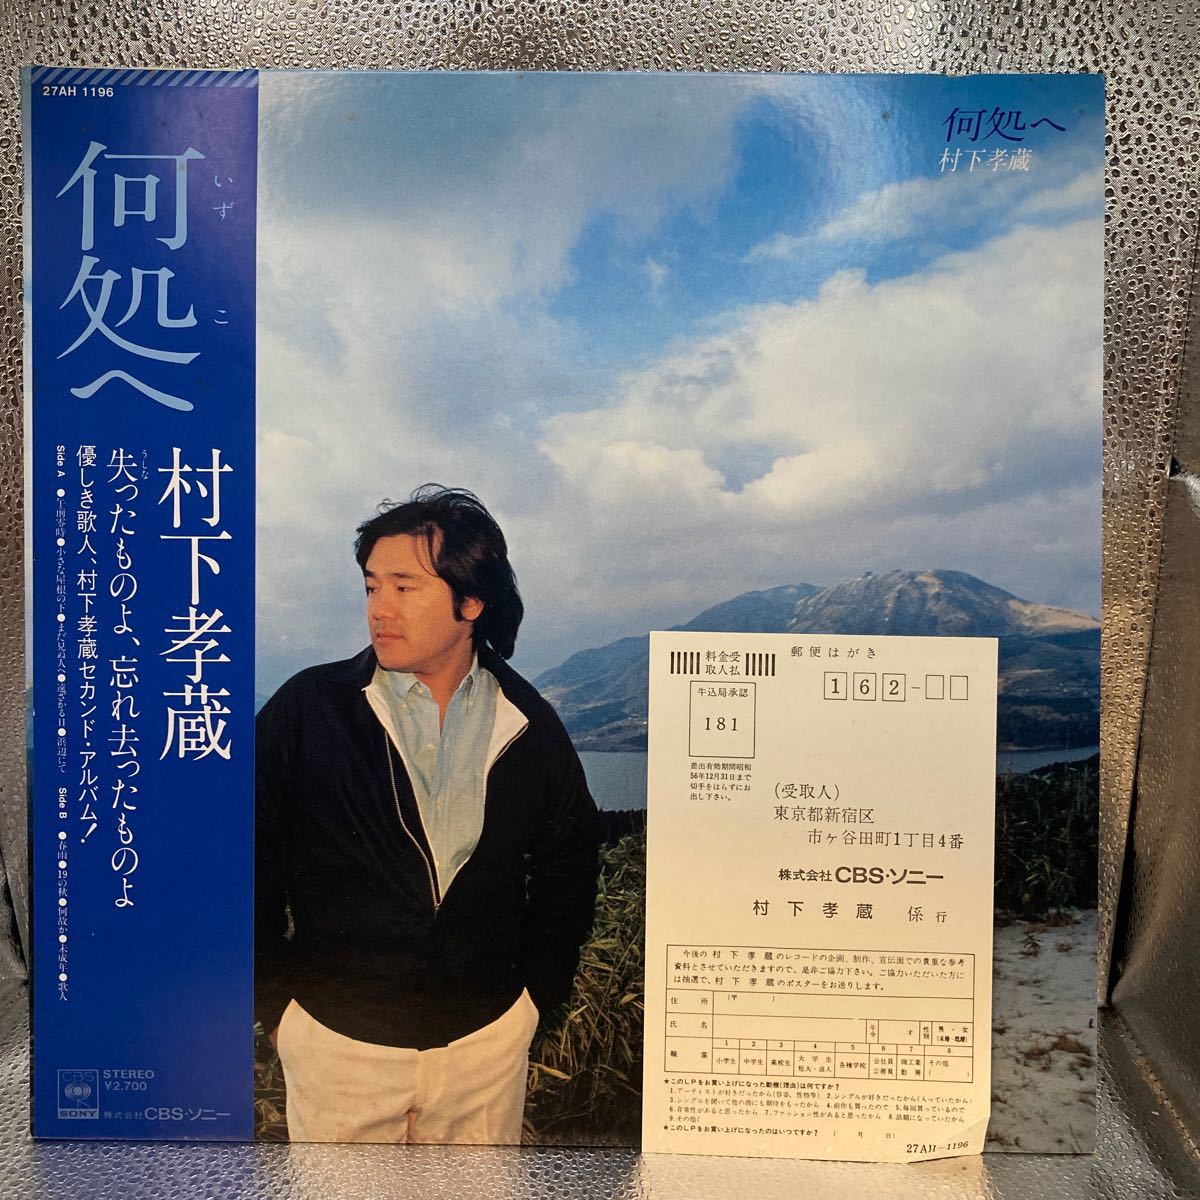 再生良好 極美盤 ハガキ LP/村下孝蔵「何処へ / 2nd アルバム (1981年・27AH-1196)」_画像1